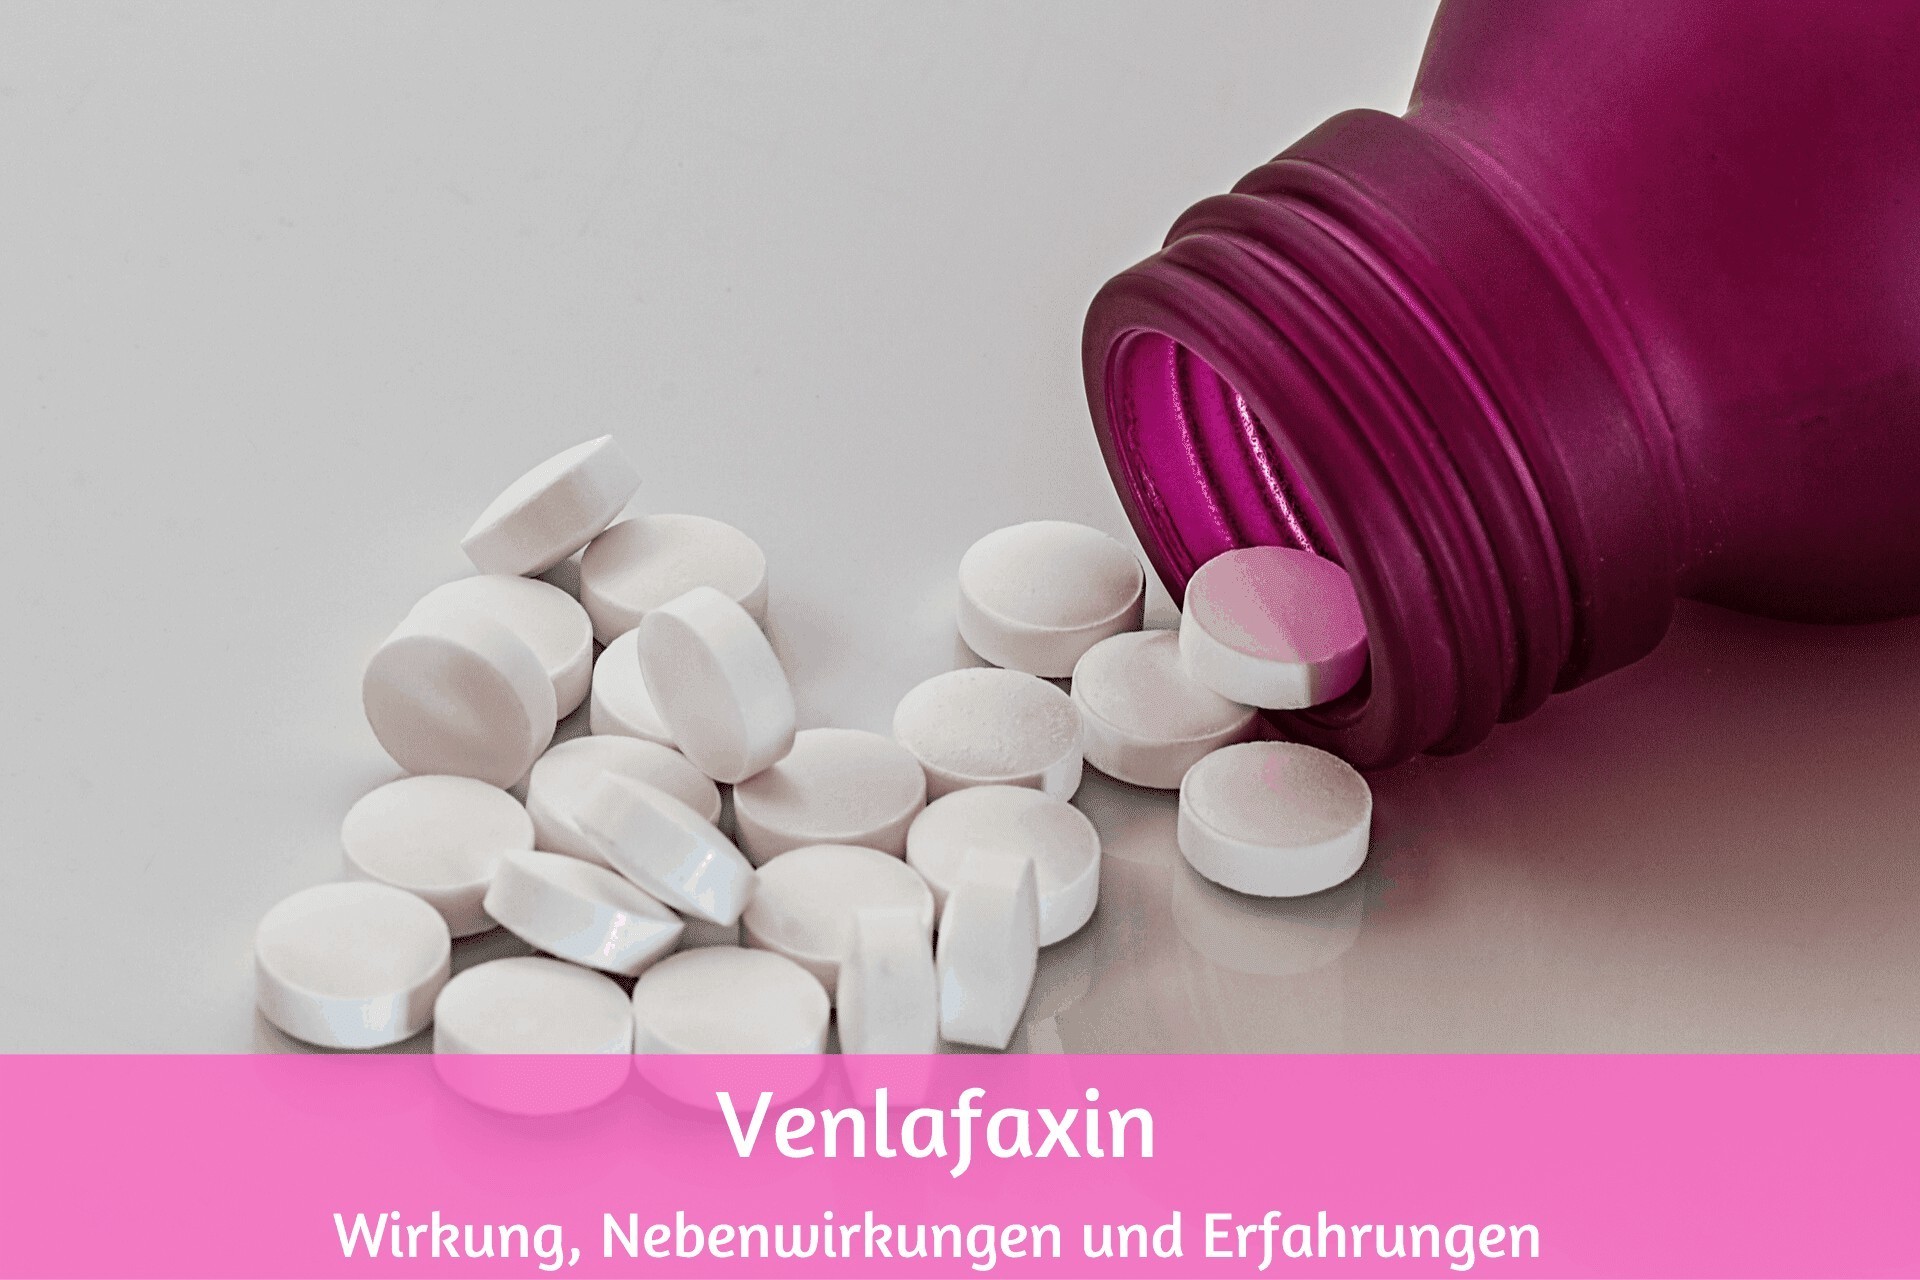 Venlafaxin: meine Erfahrungen zu Wirkung und Nebenwirkungen